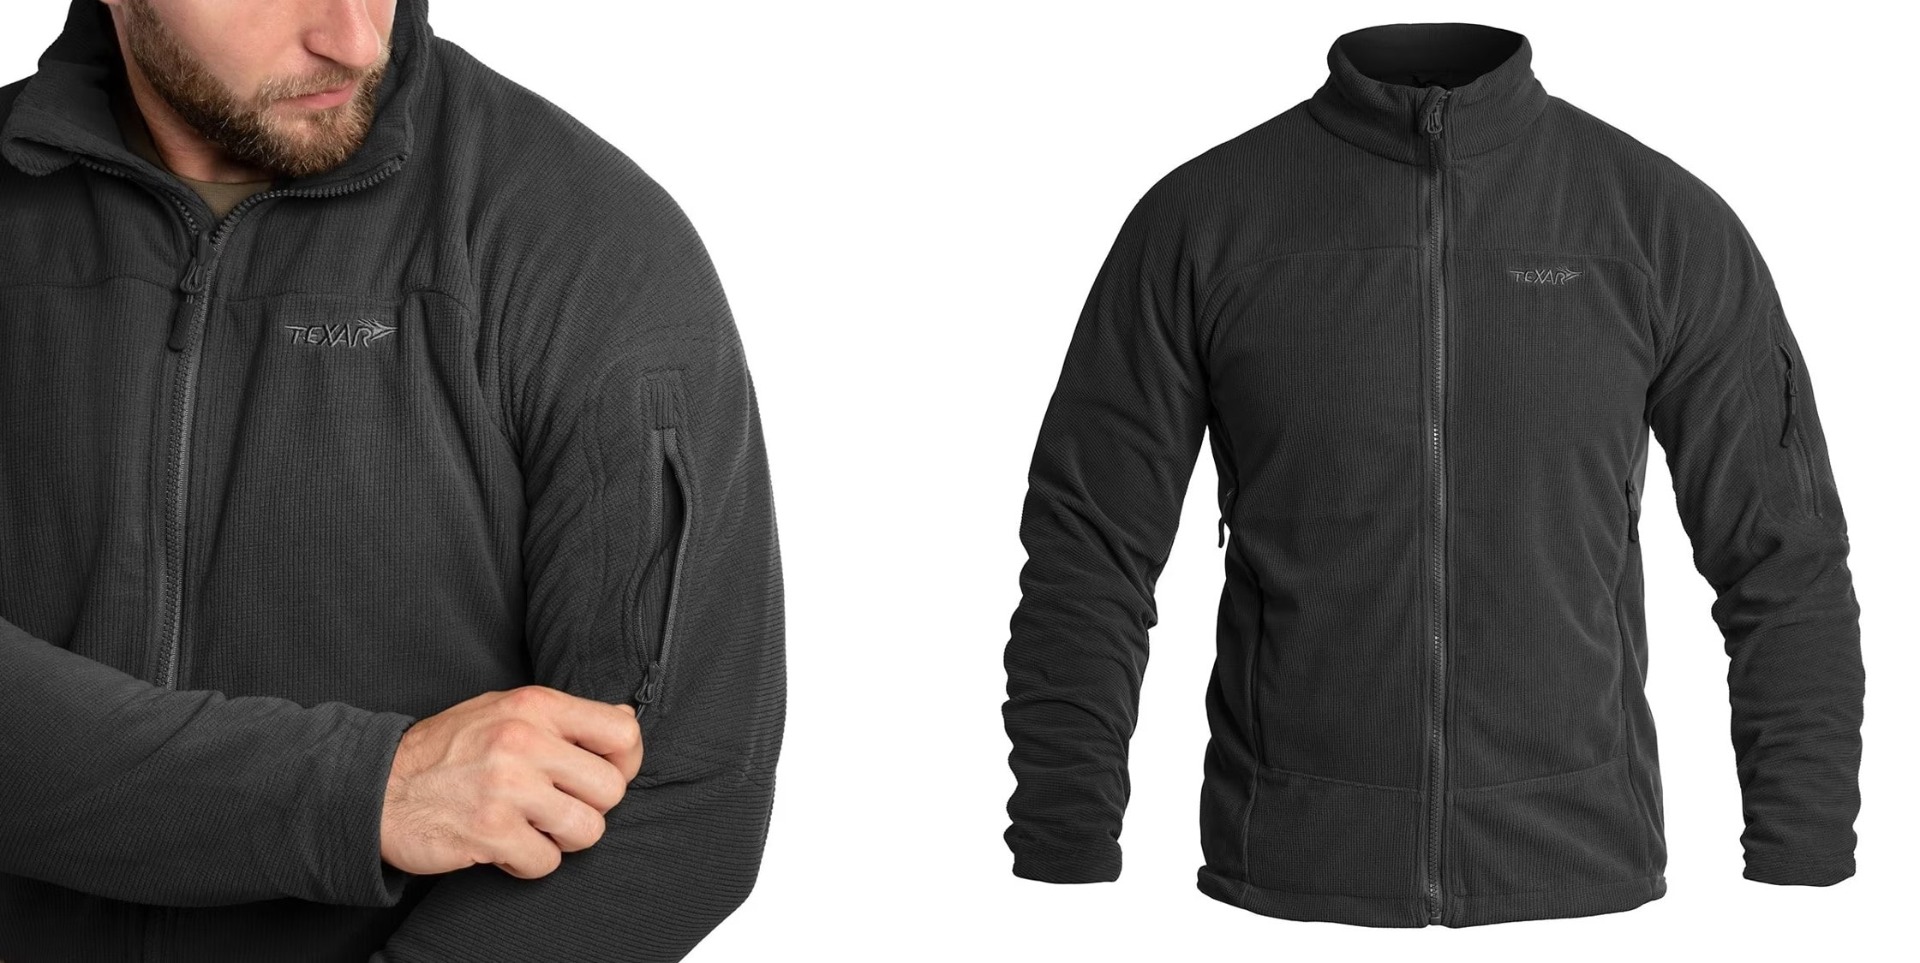 Odkrijte vrhunsko flis jakno Texar Conger Črna - idealno taktično oblačilo za zaščito in udobje v vseh vremenskih razmerah. Vzdržljiva, funkcionalna in kakovostna jakna za pripadnike varnostnih služb, pohodnike in rekreativce. Zagotovite si svoj primerek 